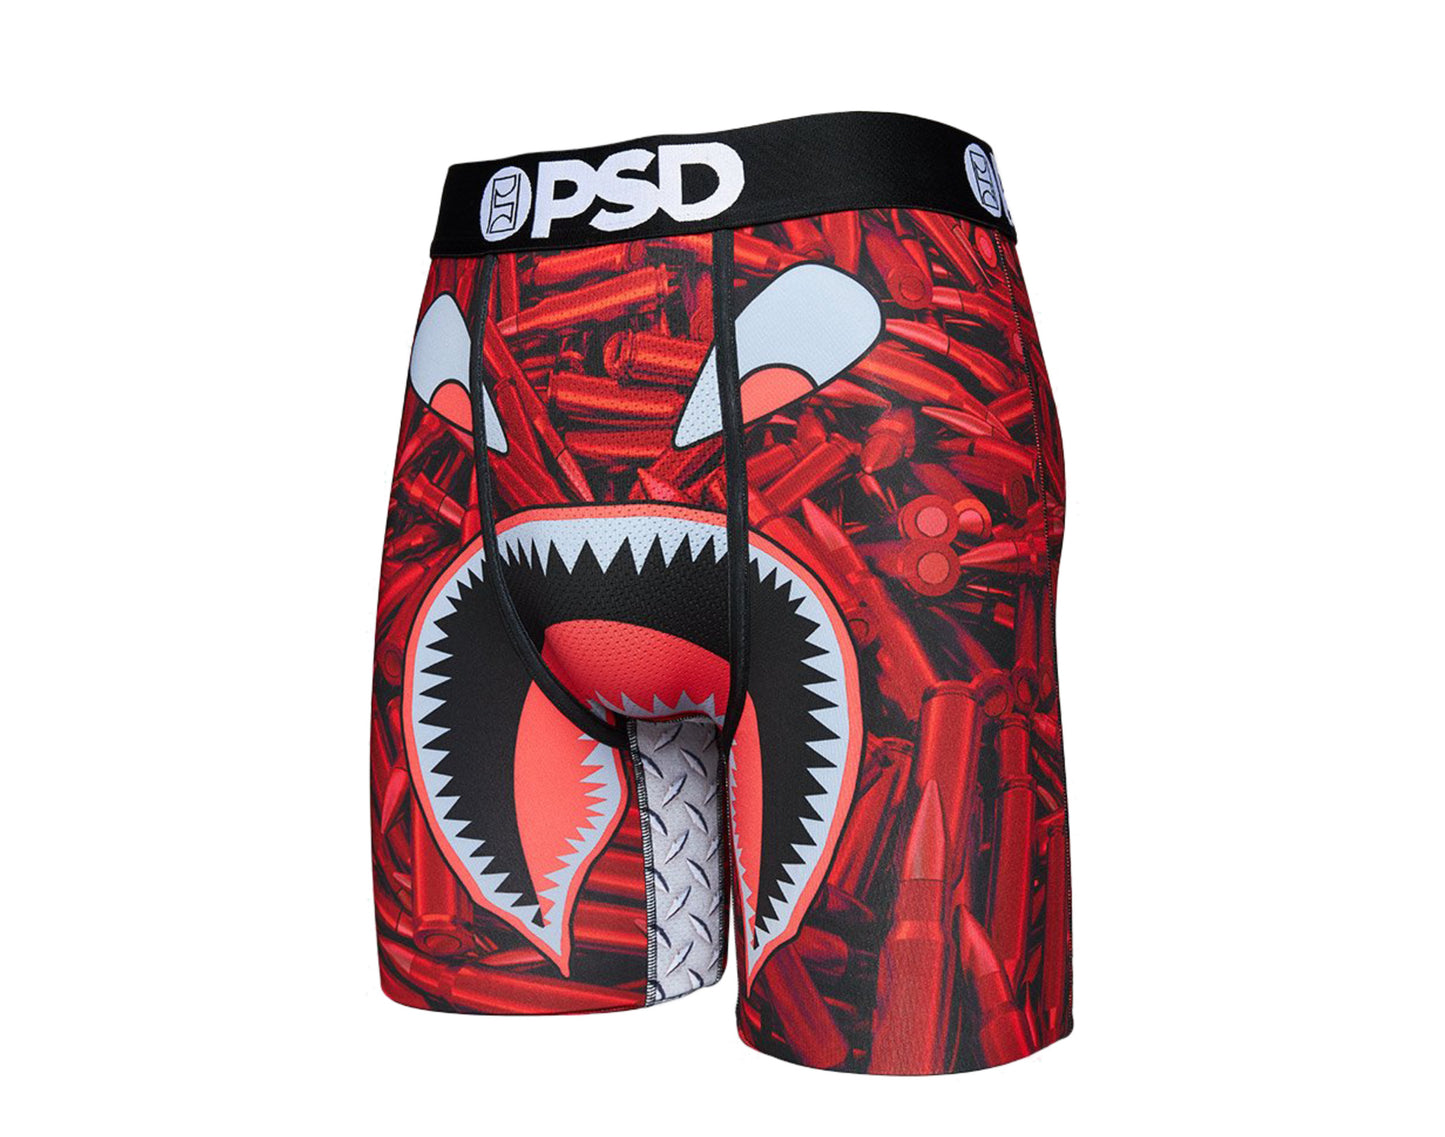 PSD Ammo Warface Boxer Briefs Men's Underwear